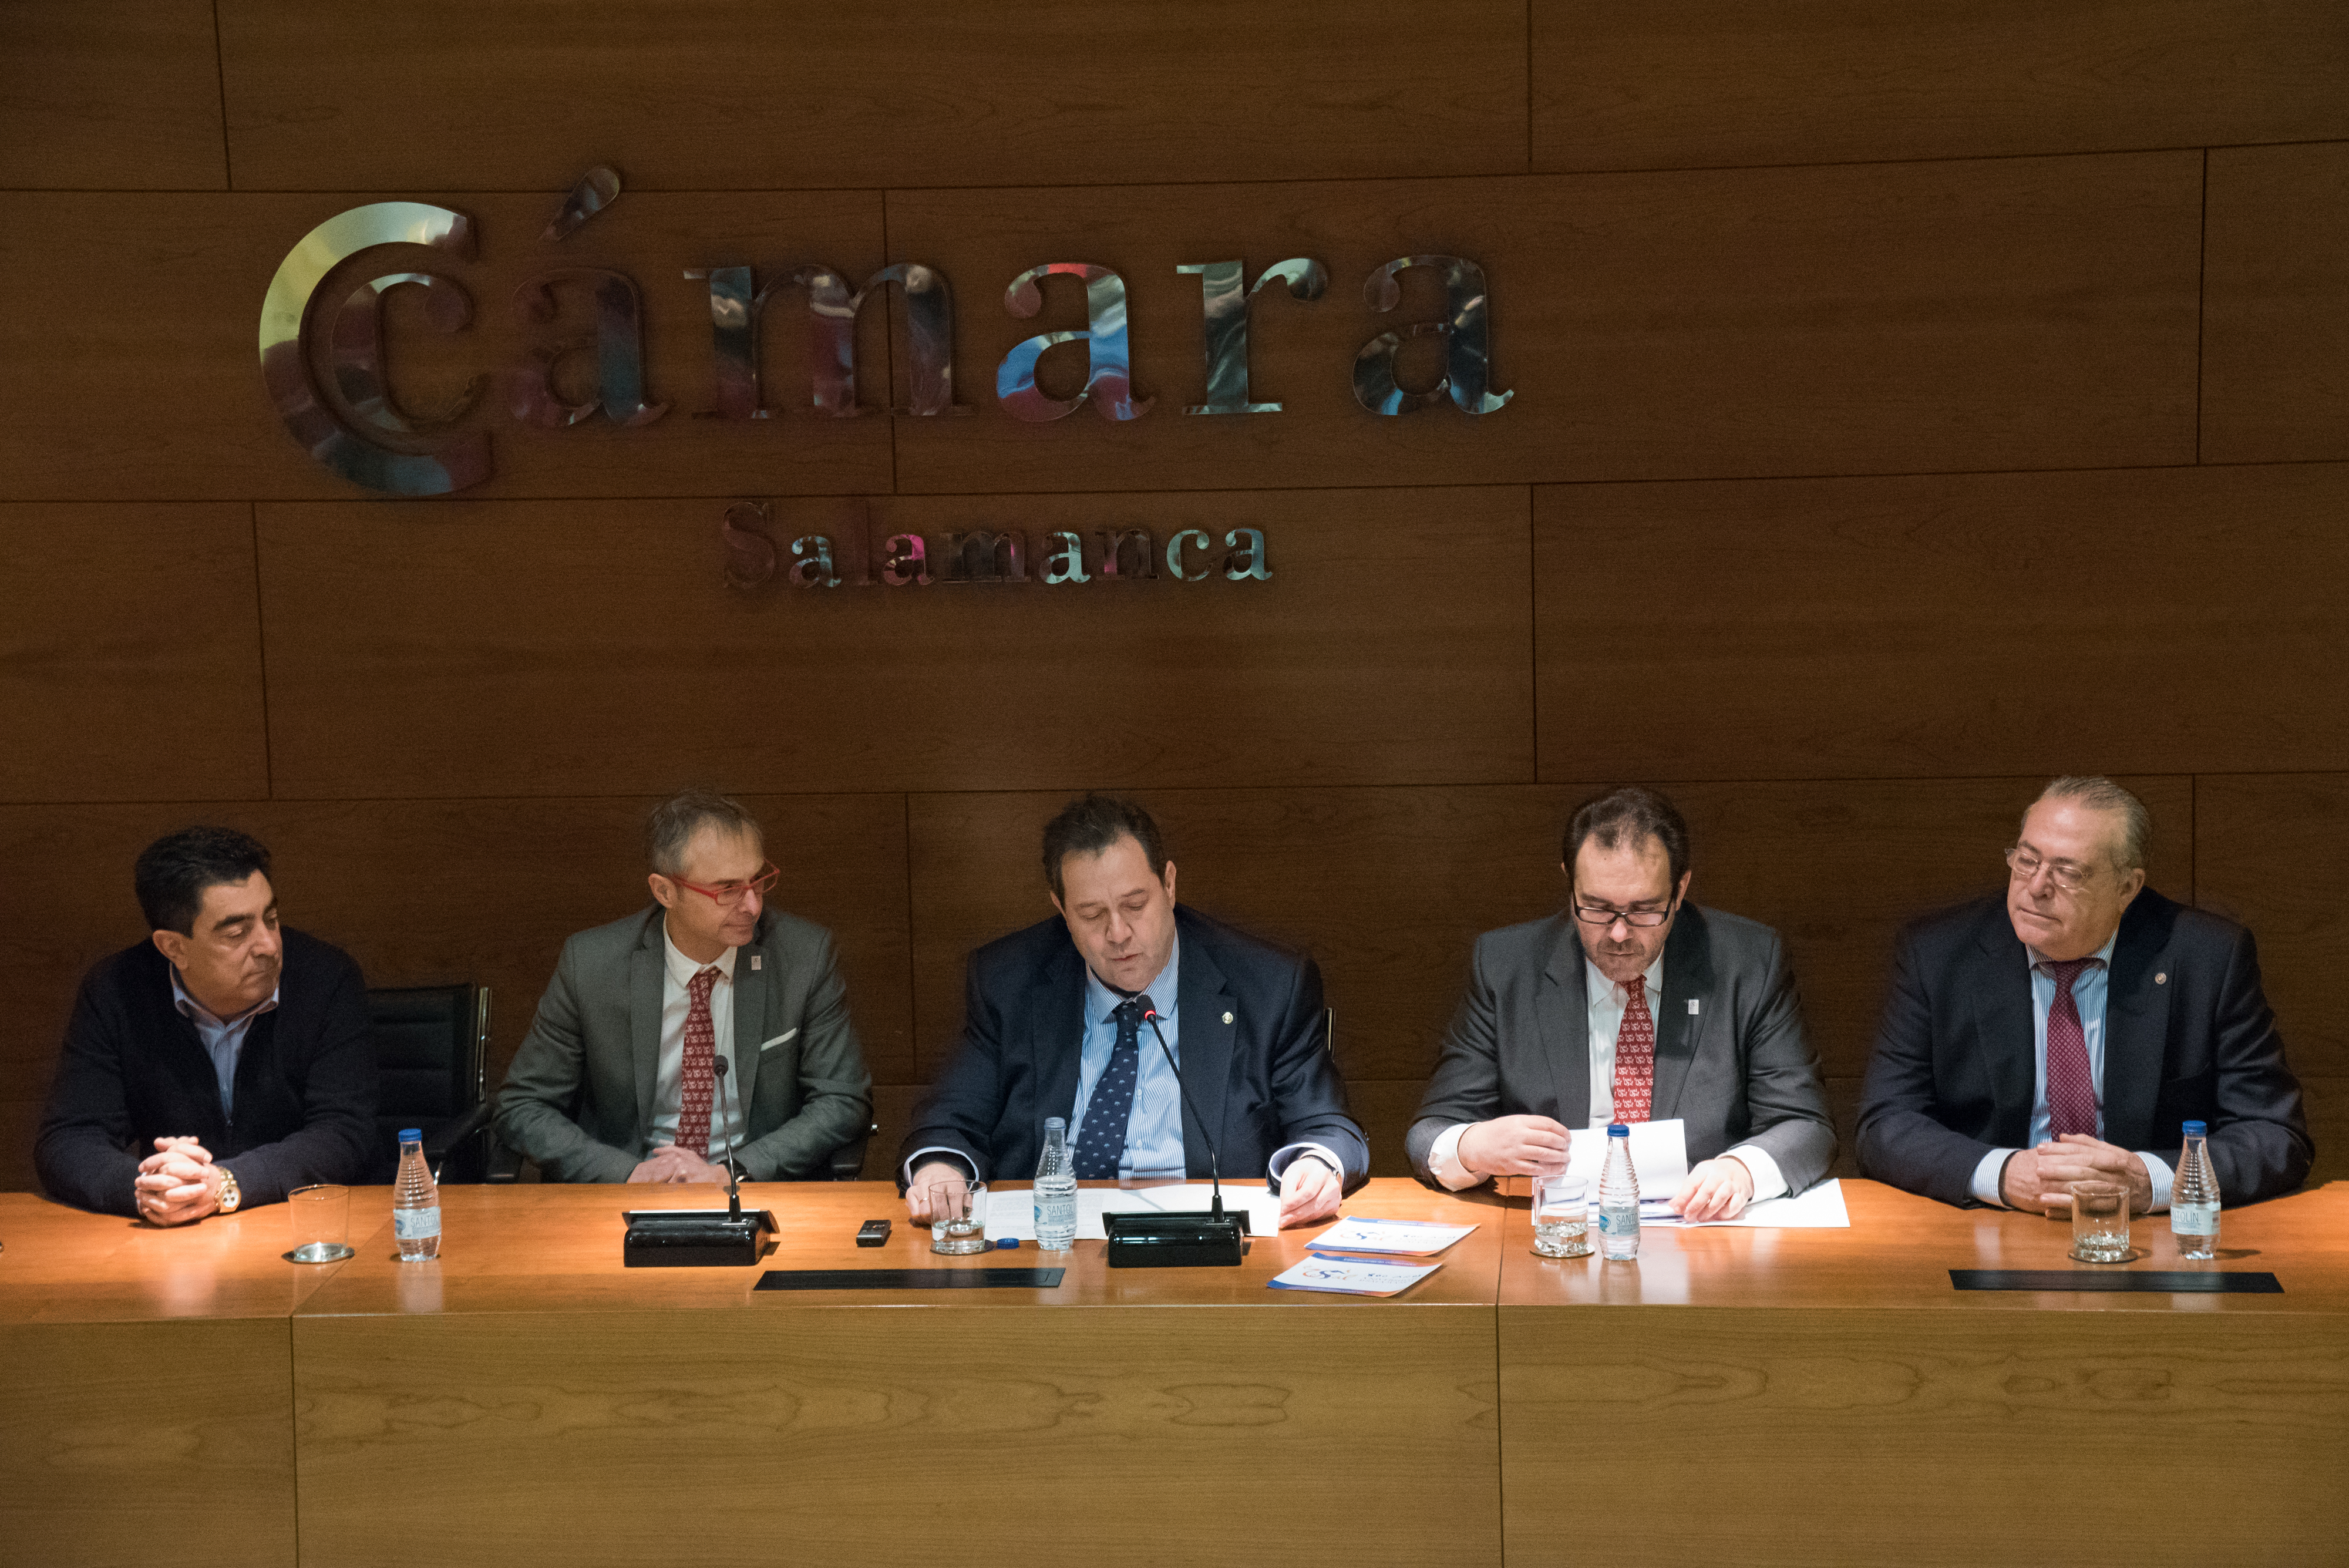 La Universidad de Salamanca y la Cámara de Comercio promueven la colaboración en el marco del VIII Centenario